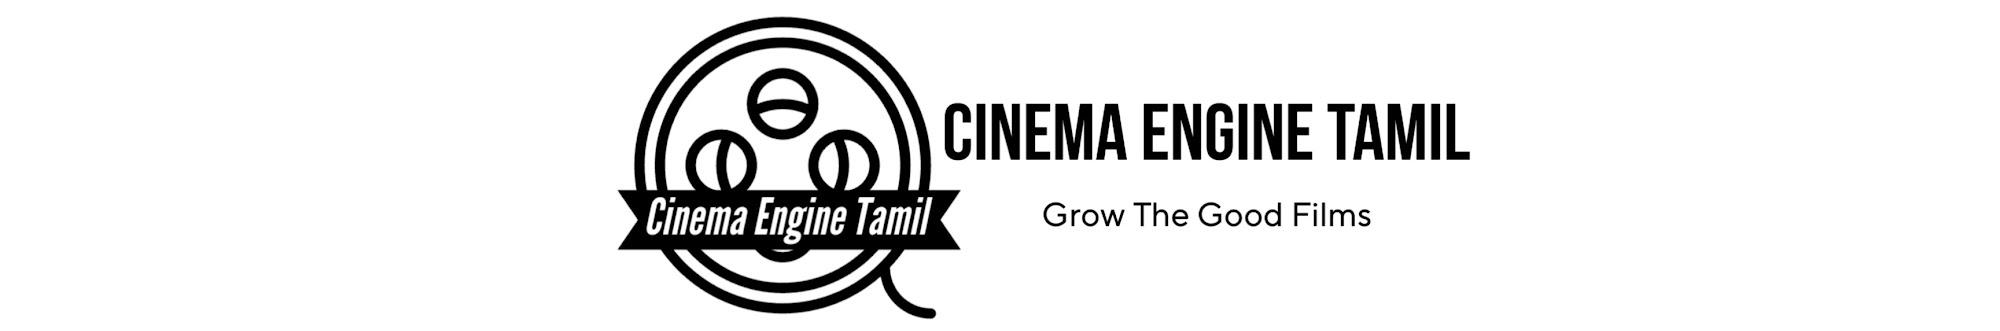 Cinema Engine Tamil